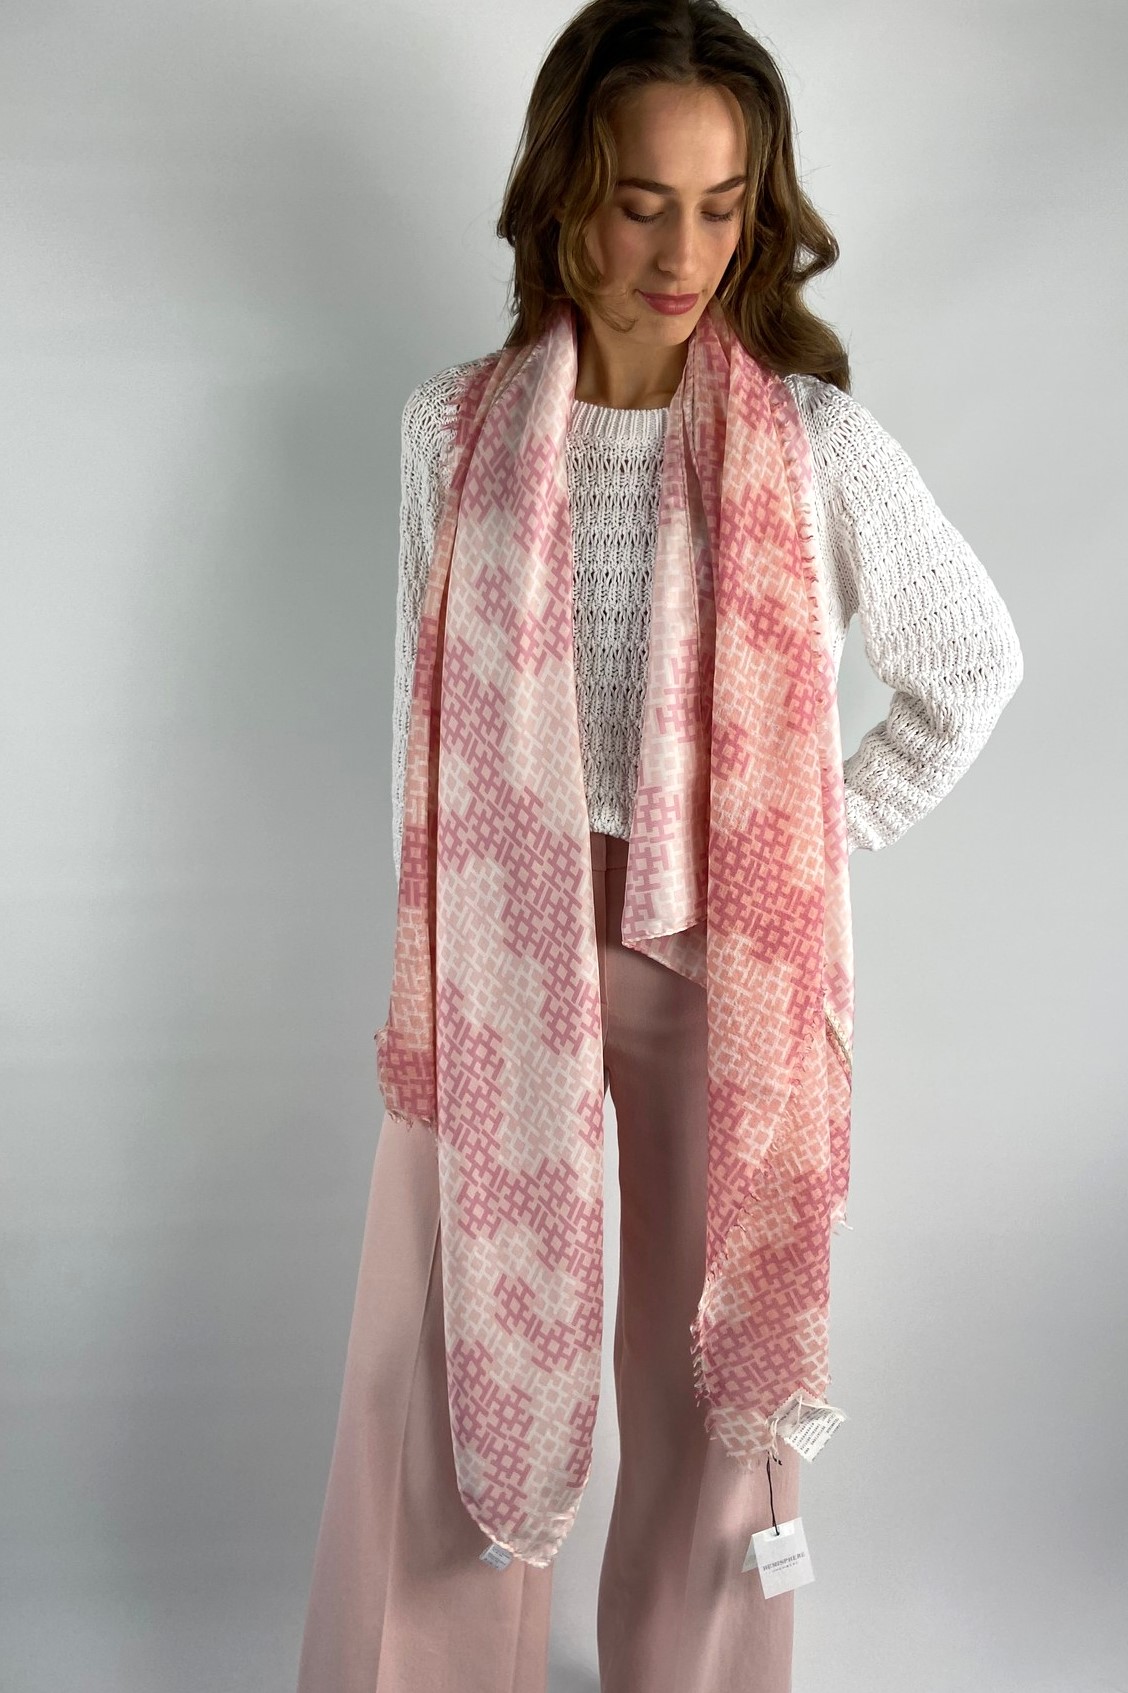 Sjaal H-print zijde wol in de kleur roze van het merk Hemisphere